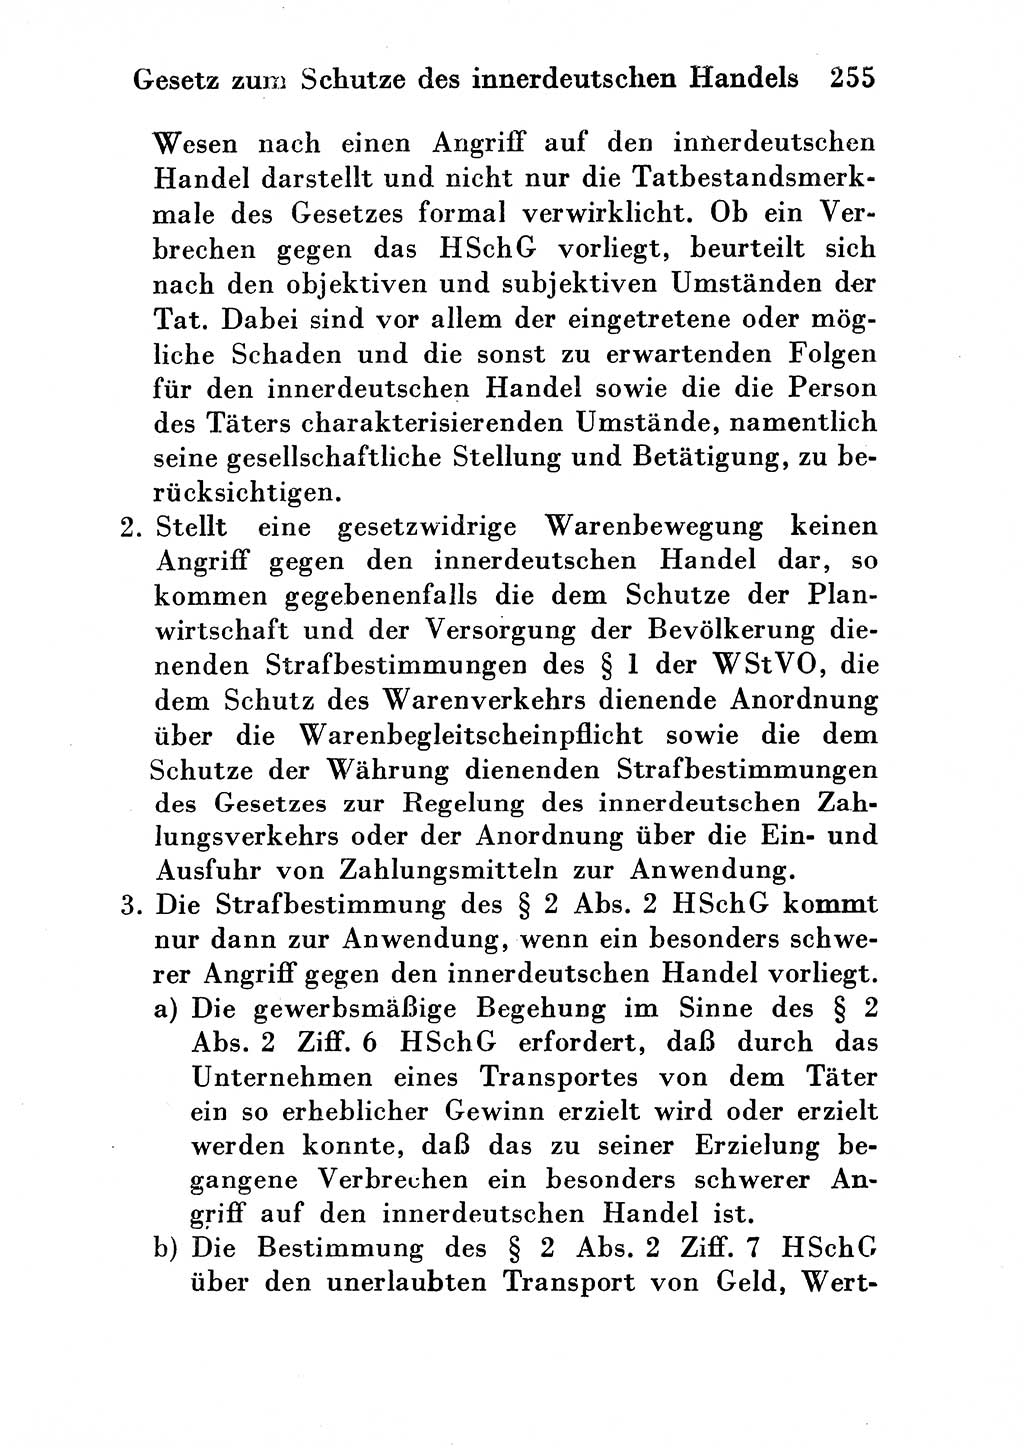 Strafgesetzbuch (StGB) und andere Strafgesetze [Deutsche Demokratische Republik (DDR)] 1954, Seite 255 (StGB Strafges. DDR 1954, S. 255)